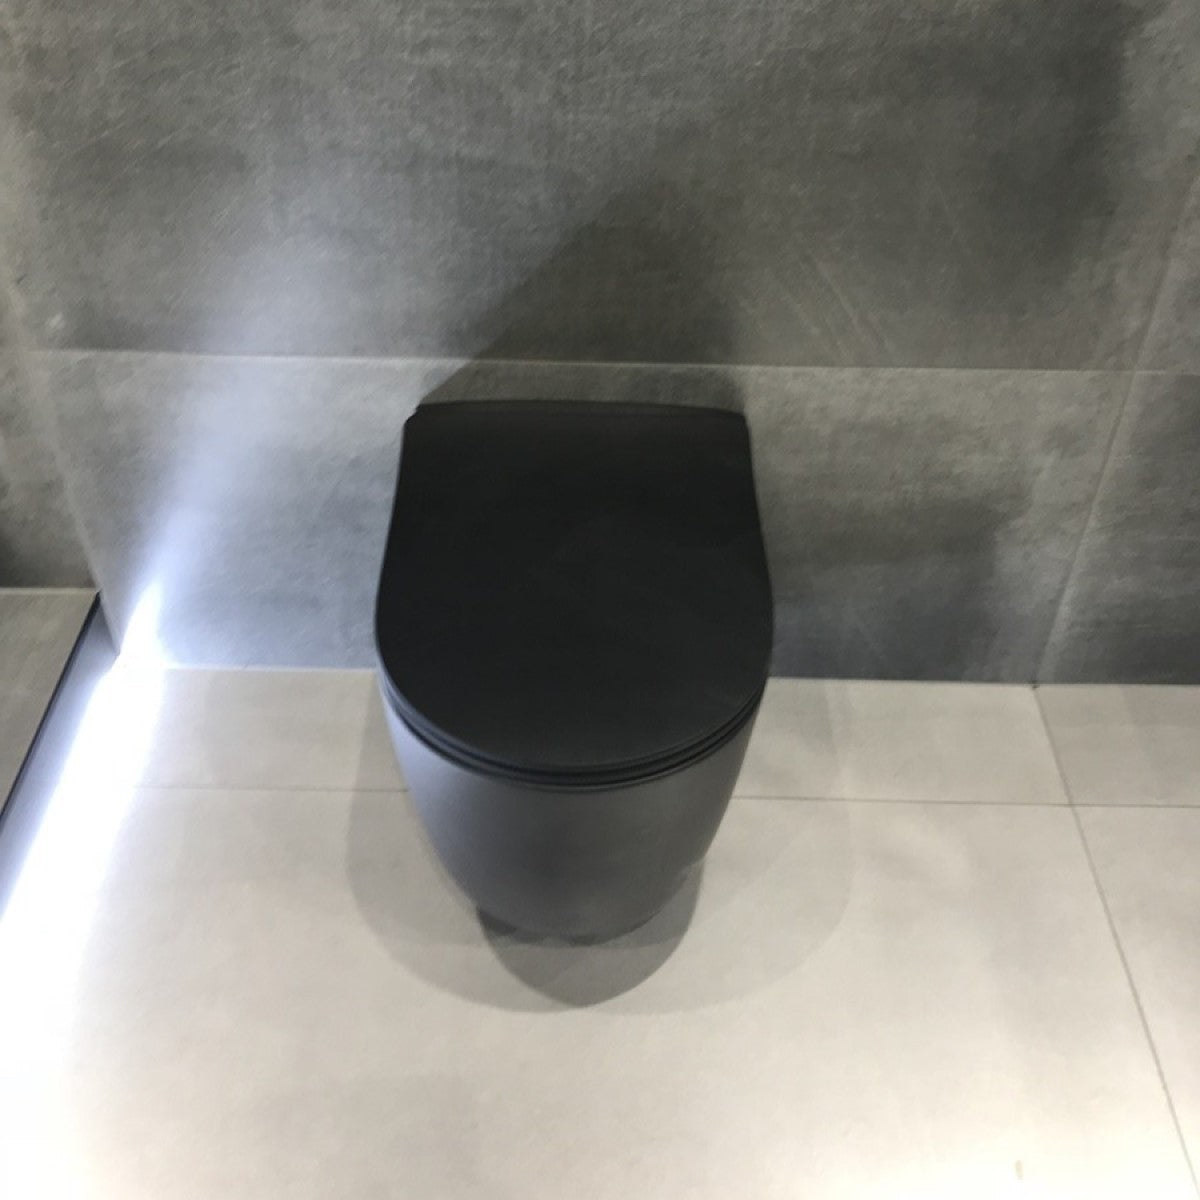 WC školjke AL010BL Glacera Alfa viseča brezrobna WC školjka črna z mat zaključkom | KOPALNICA-ONLINE.SI